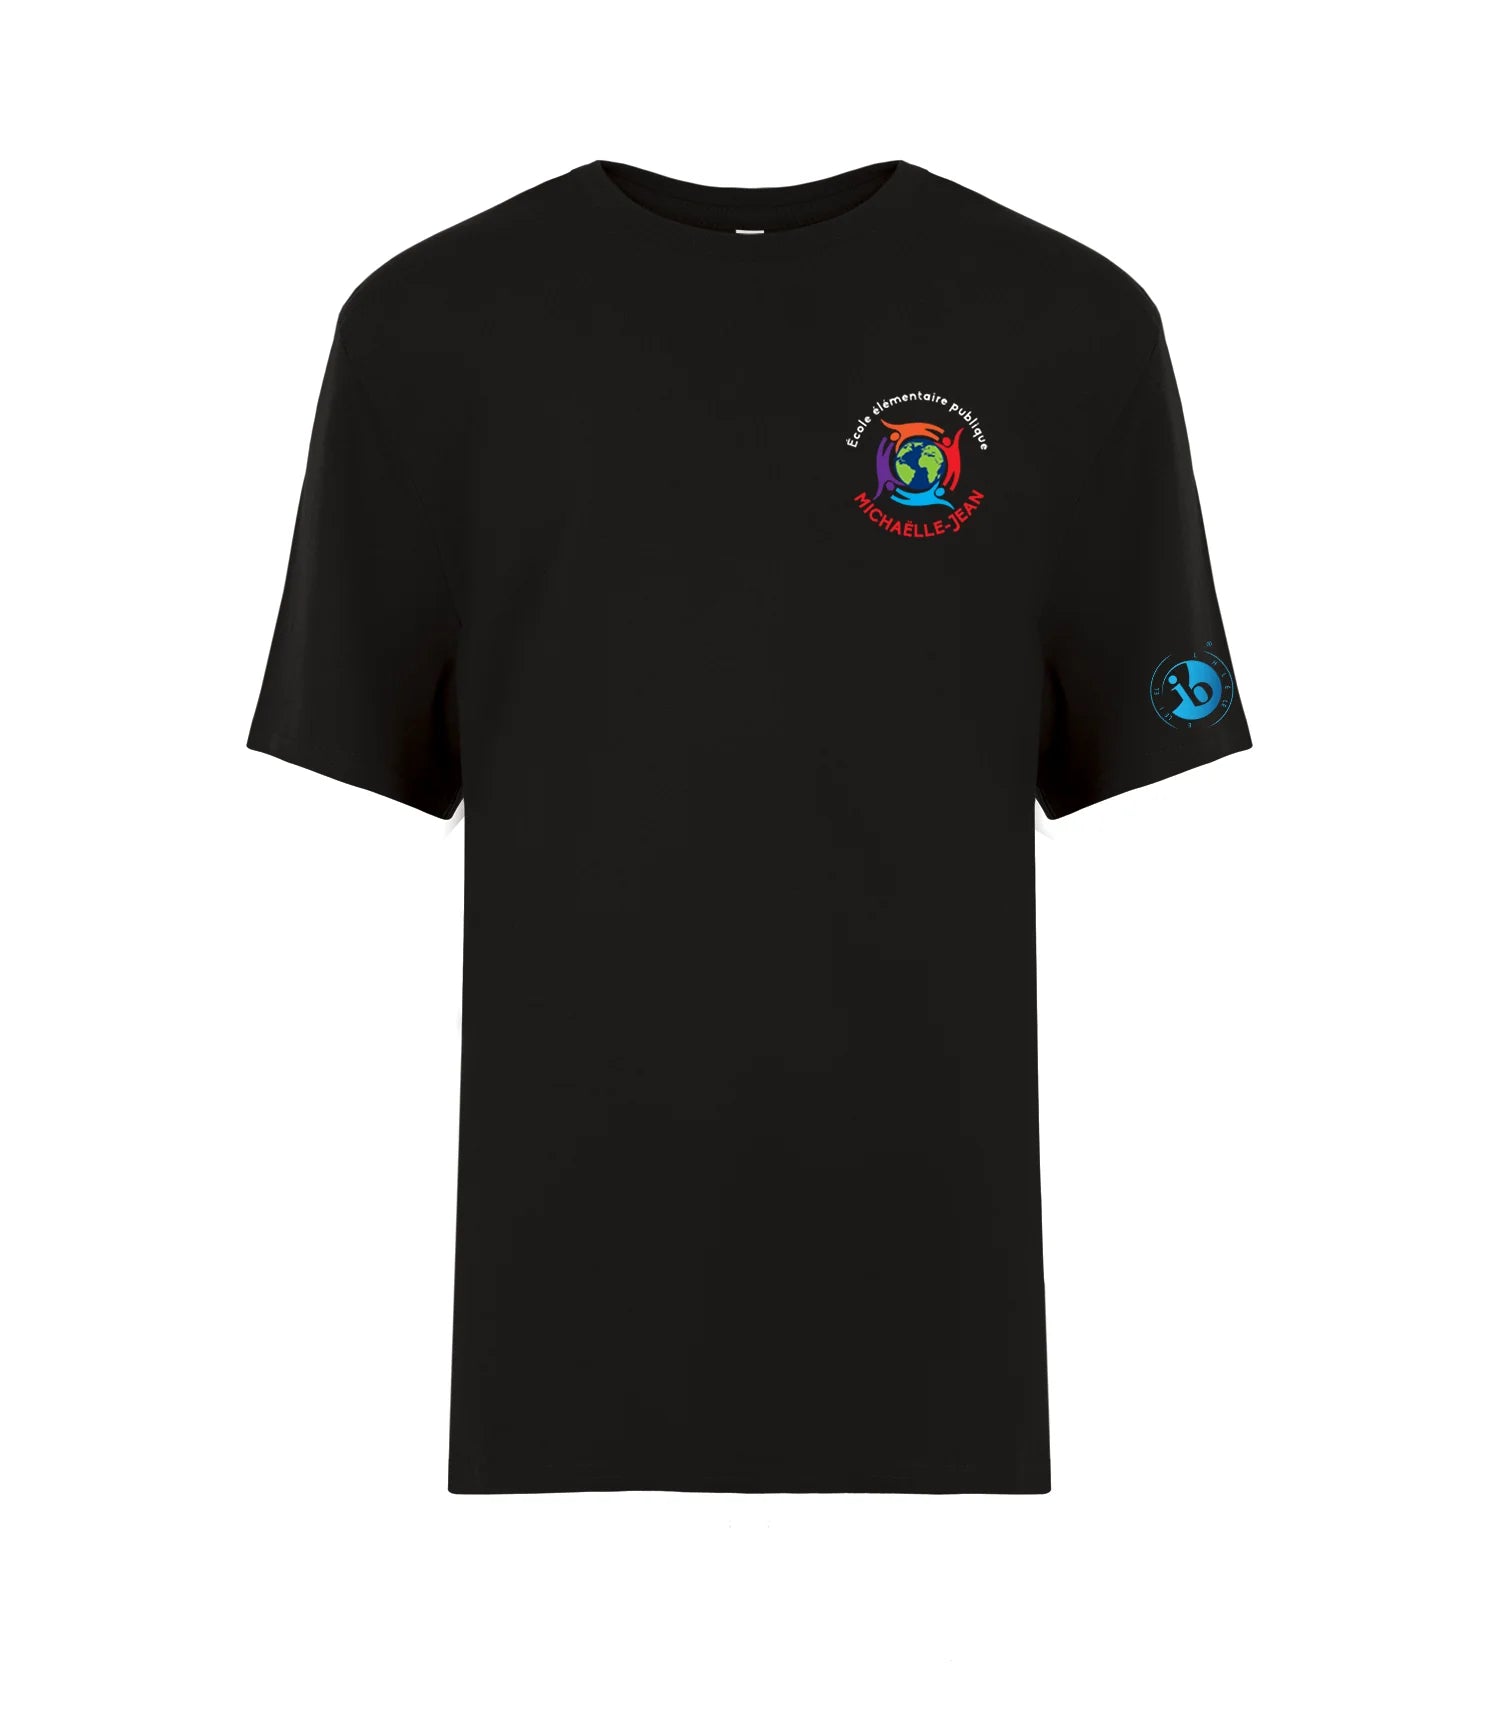 MJE - T-shirt ATC EUROSPUN Ring Spun pour jeunes